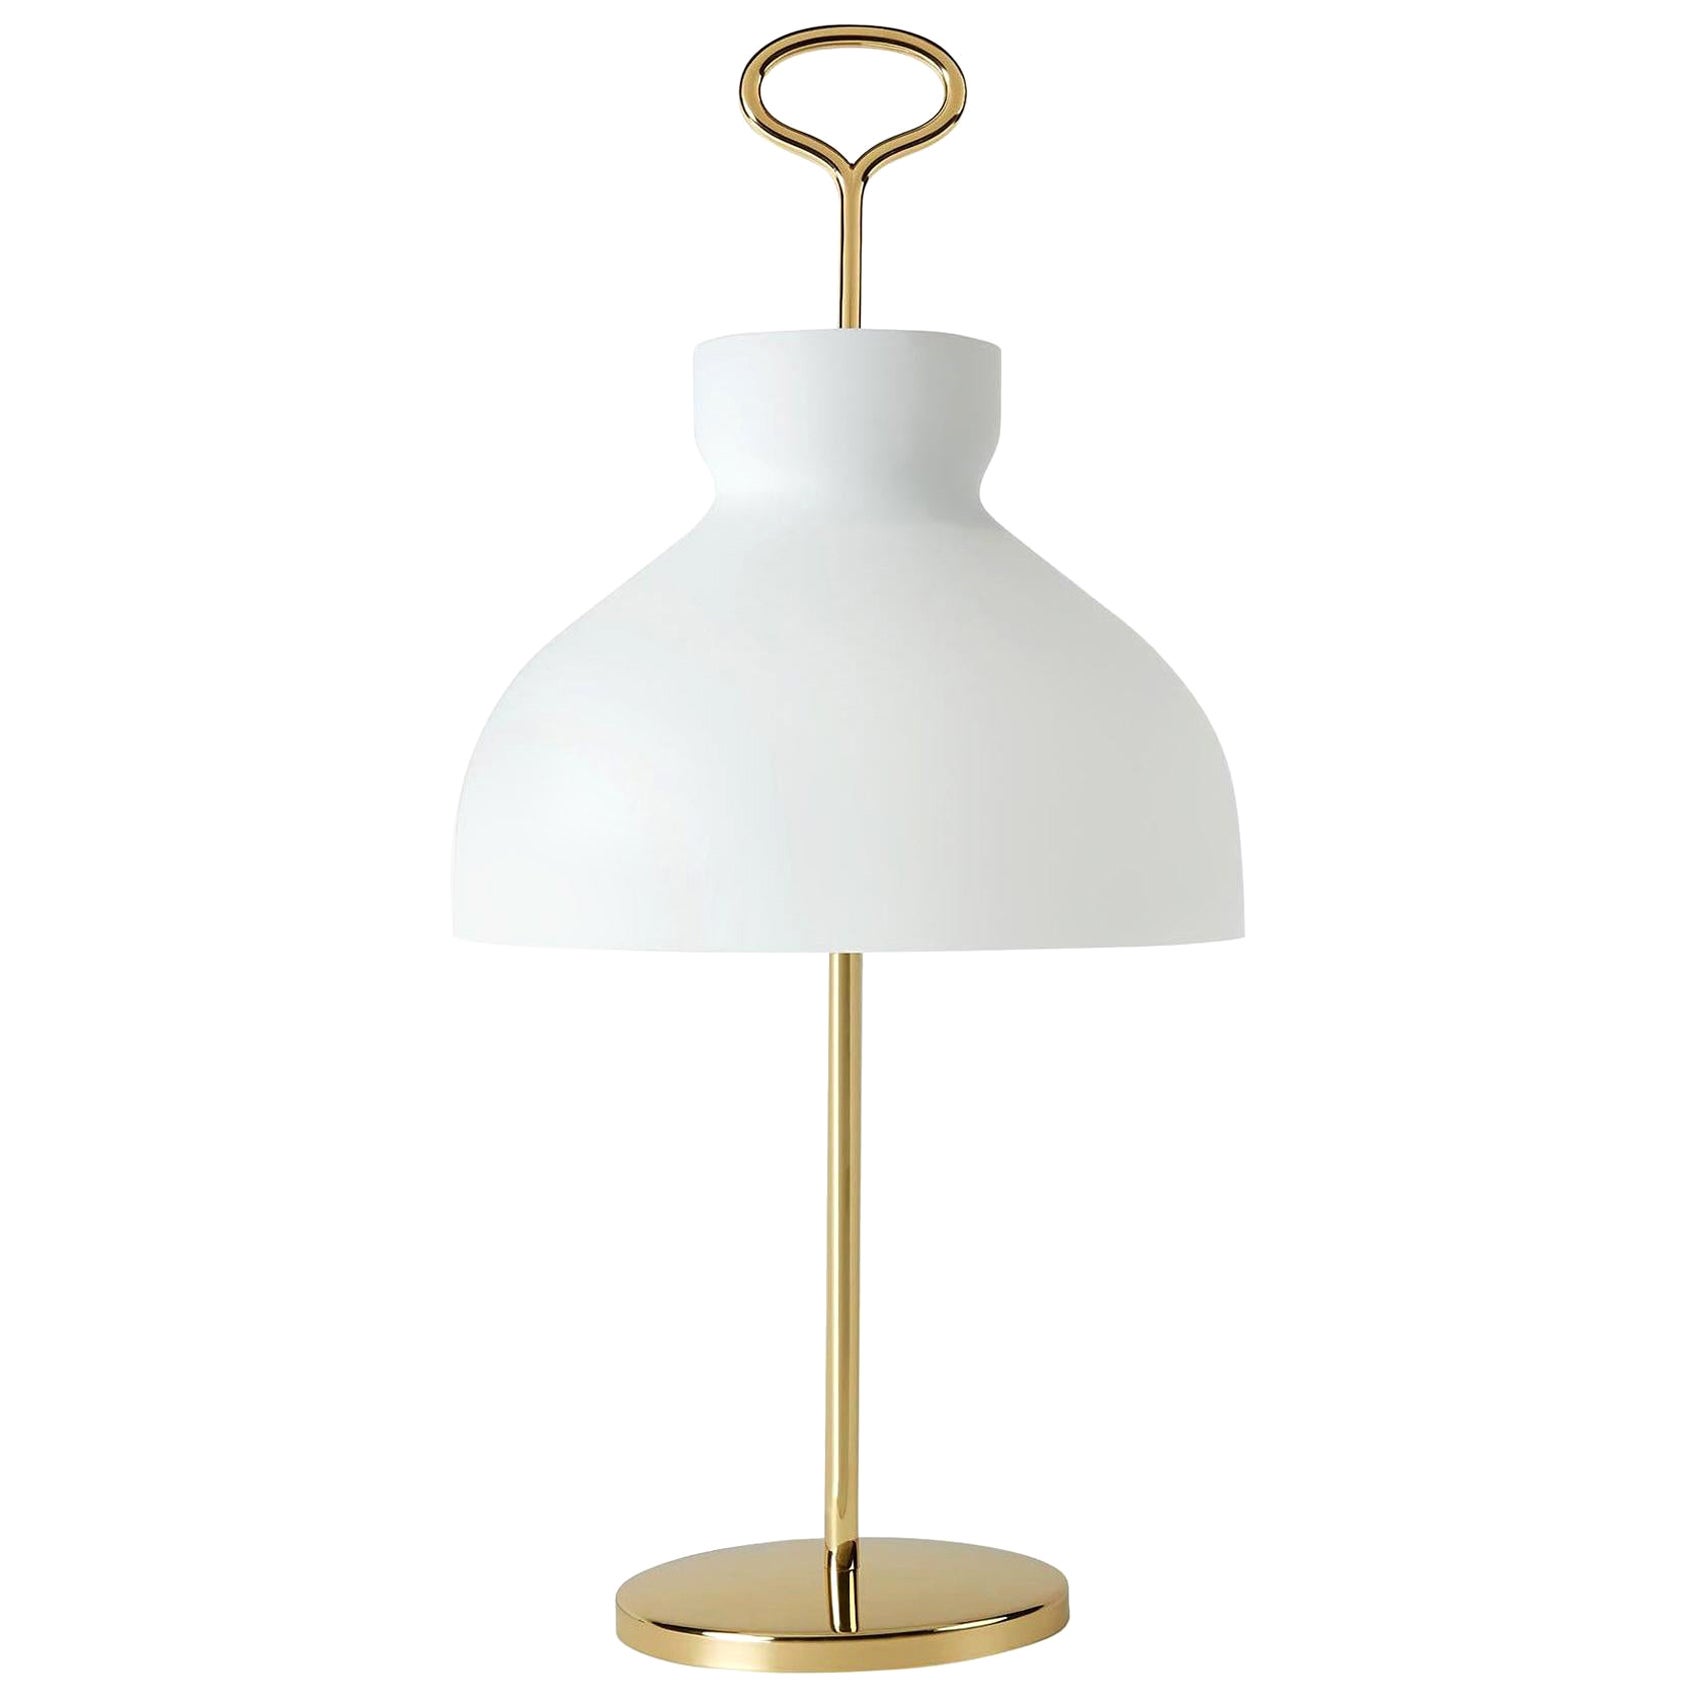 Large Ignazio Gardella 'Arenzano' Table Lamp in Brass and Glass for Tato Italia In New Condition For Sale In Glendale, CA